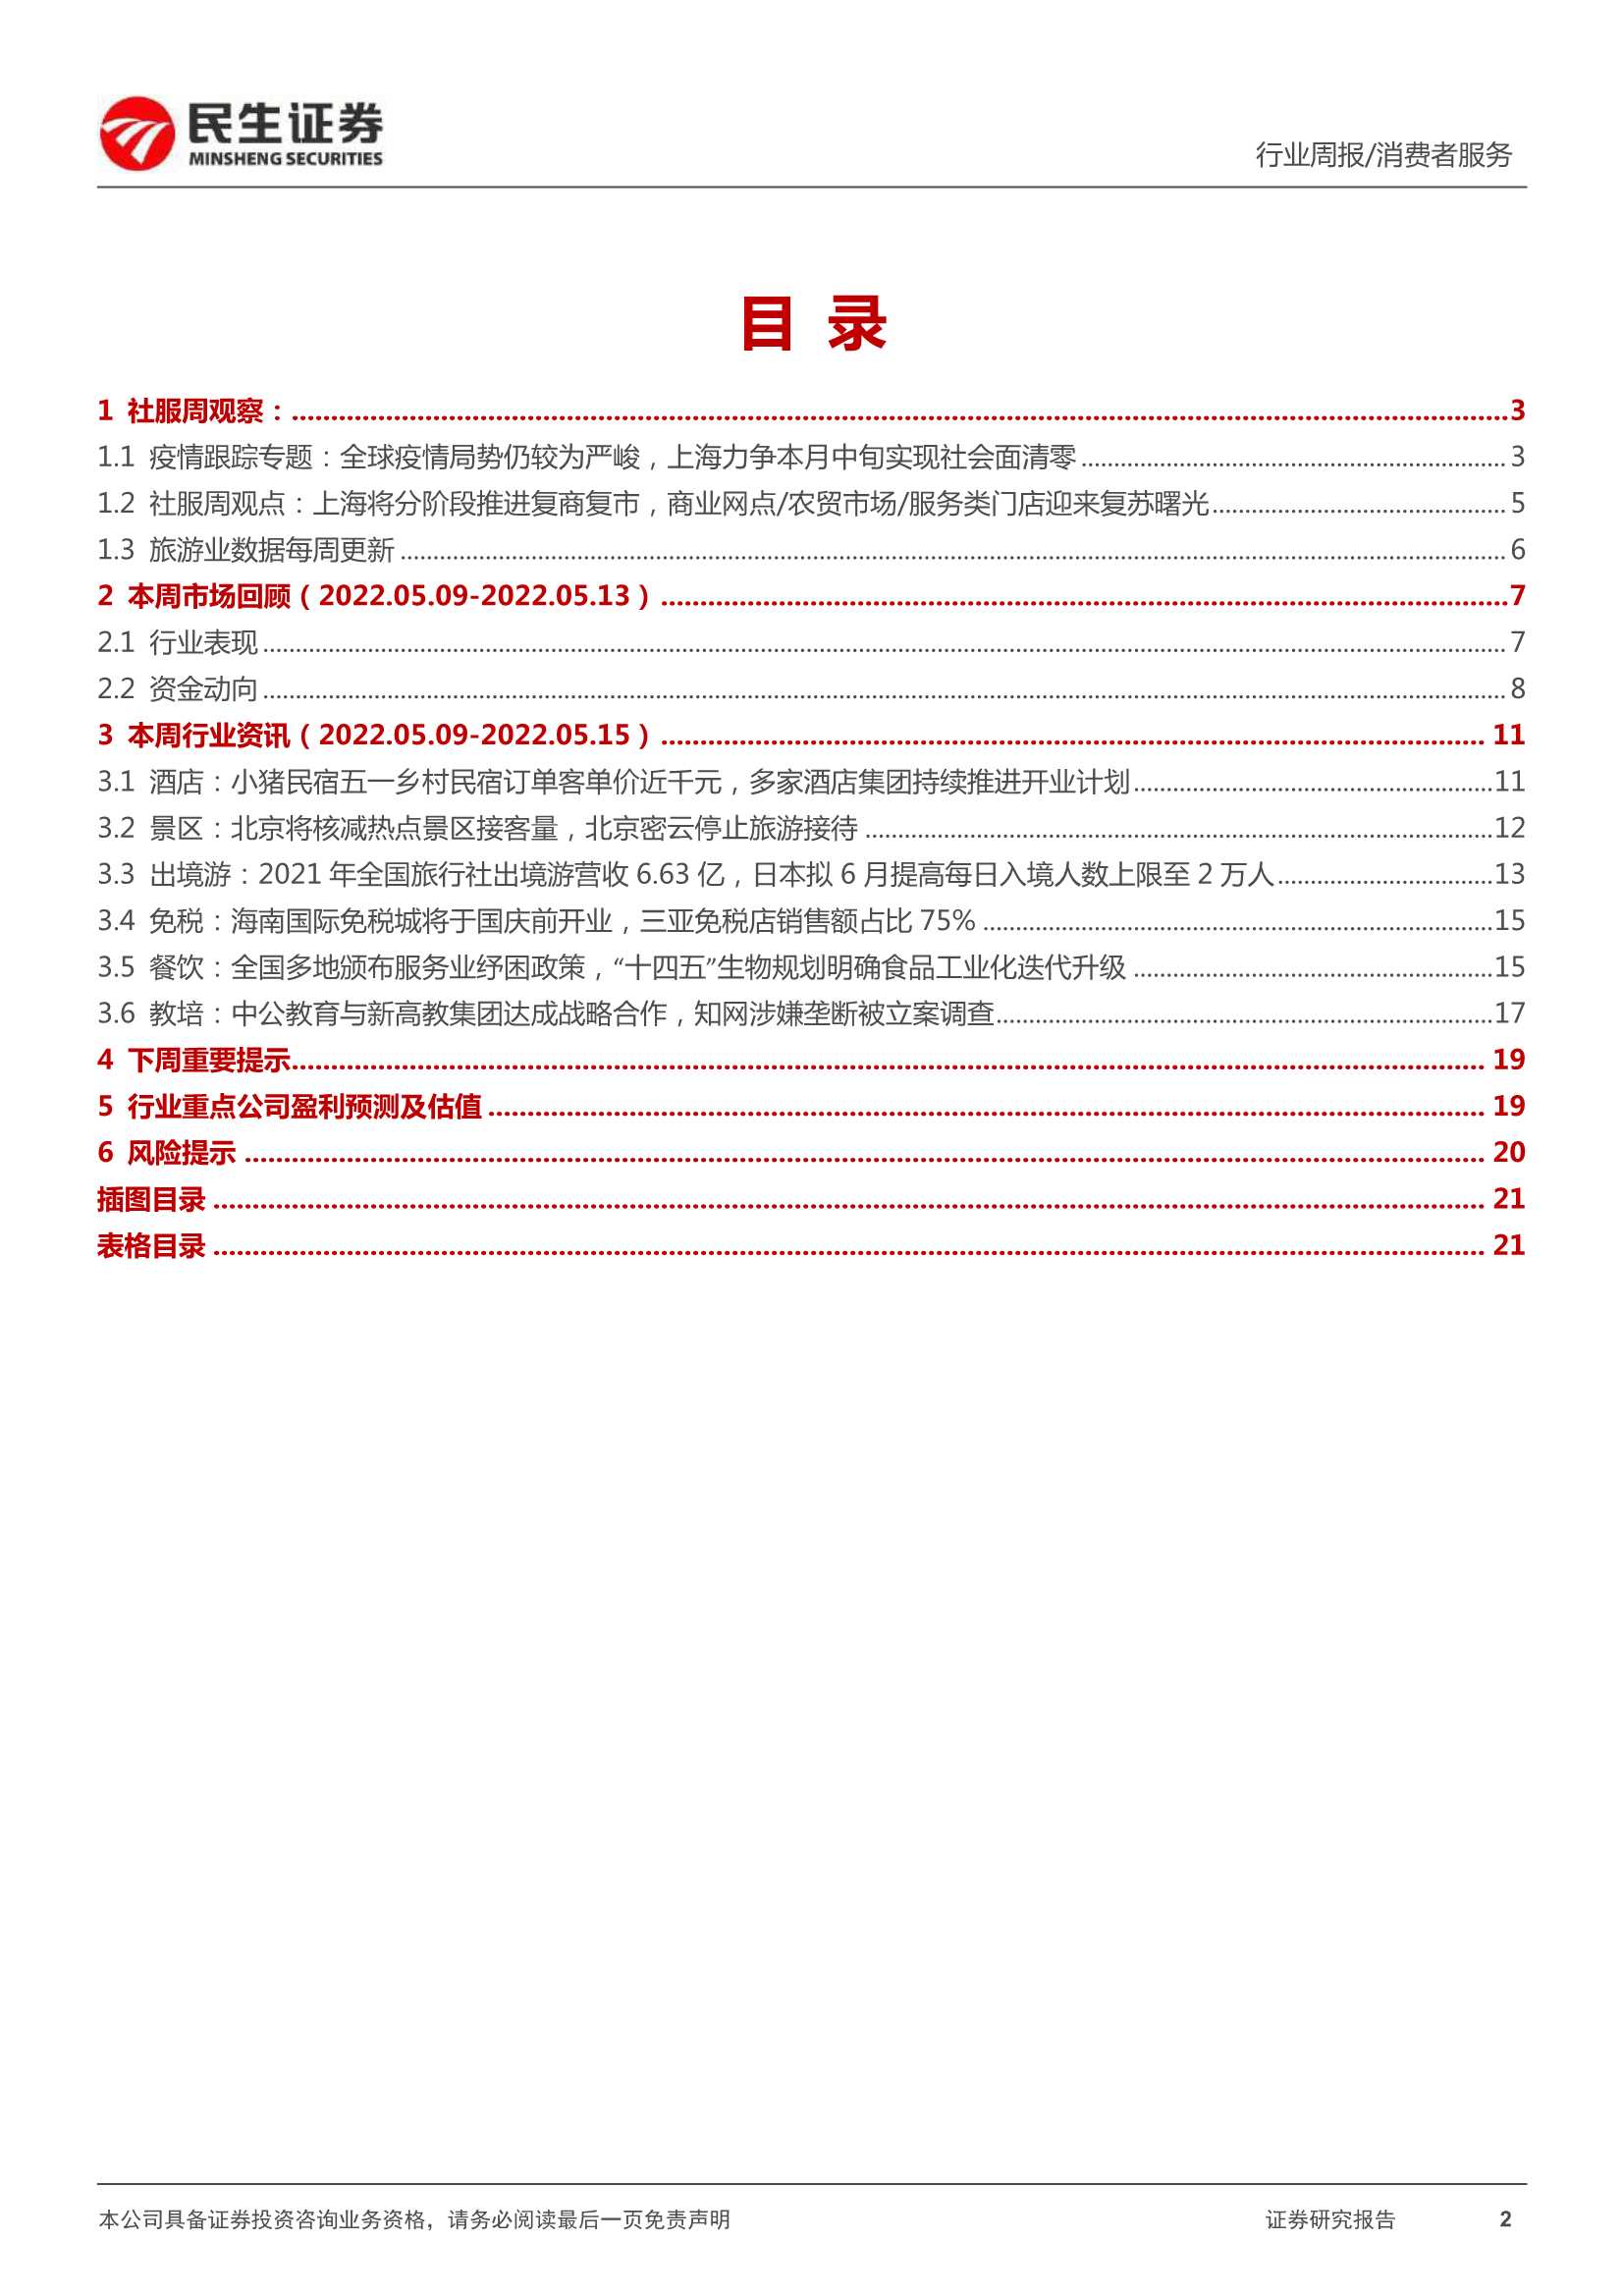 消费者服务行业周报：上海将分阶段推进复商复市，关注线下商贸及服务业态复苏-20220515-民生证券-22页